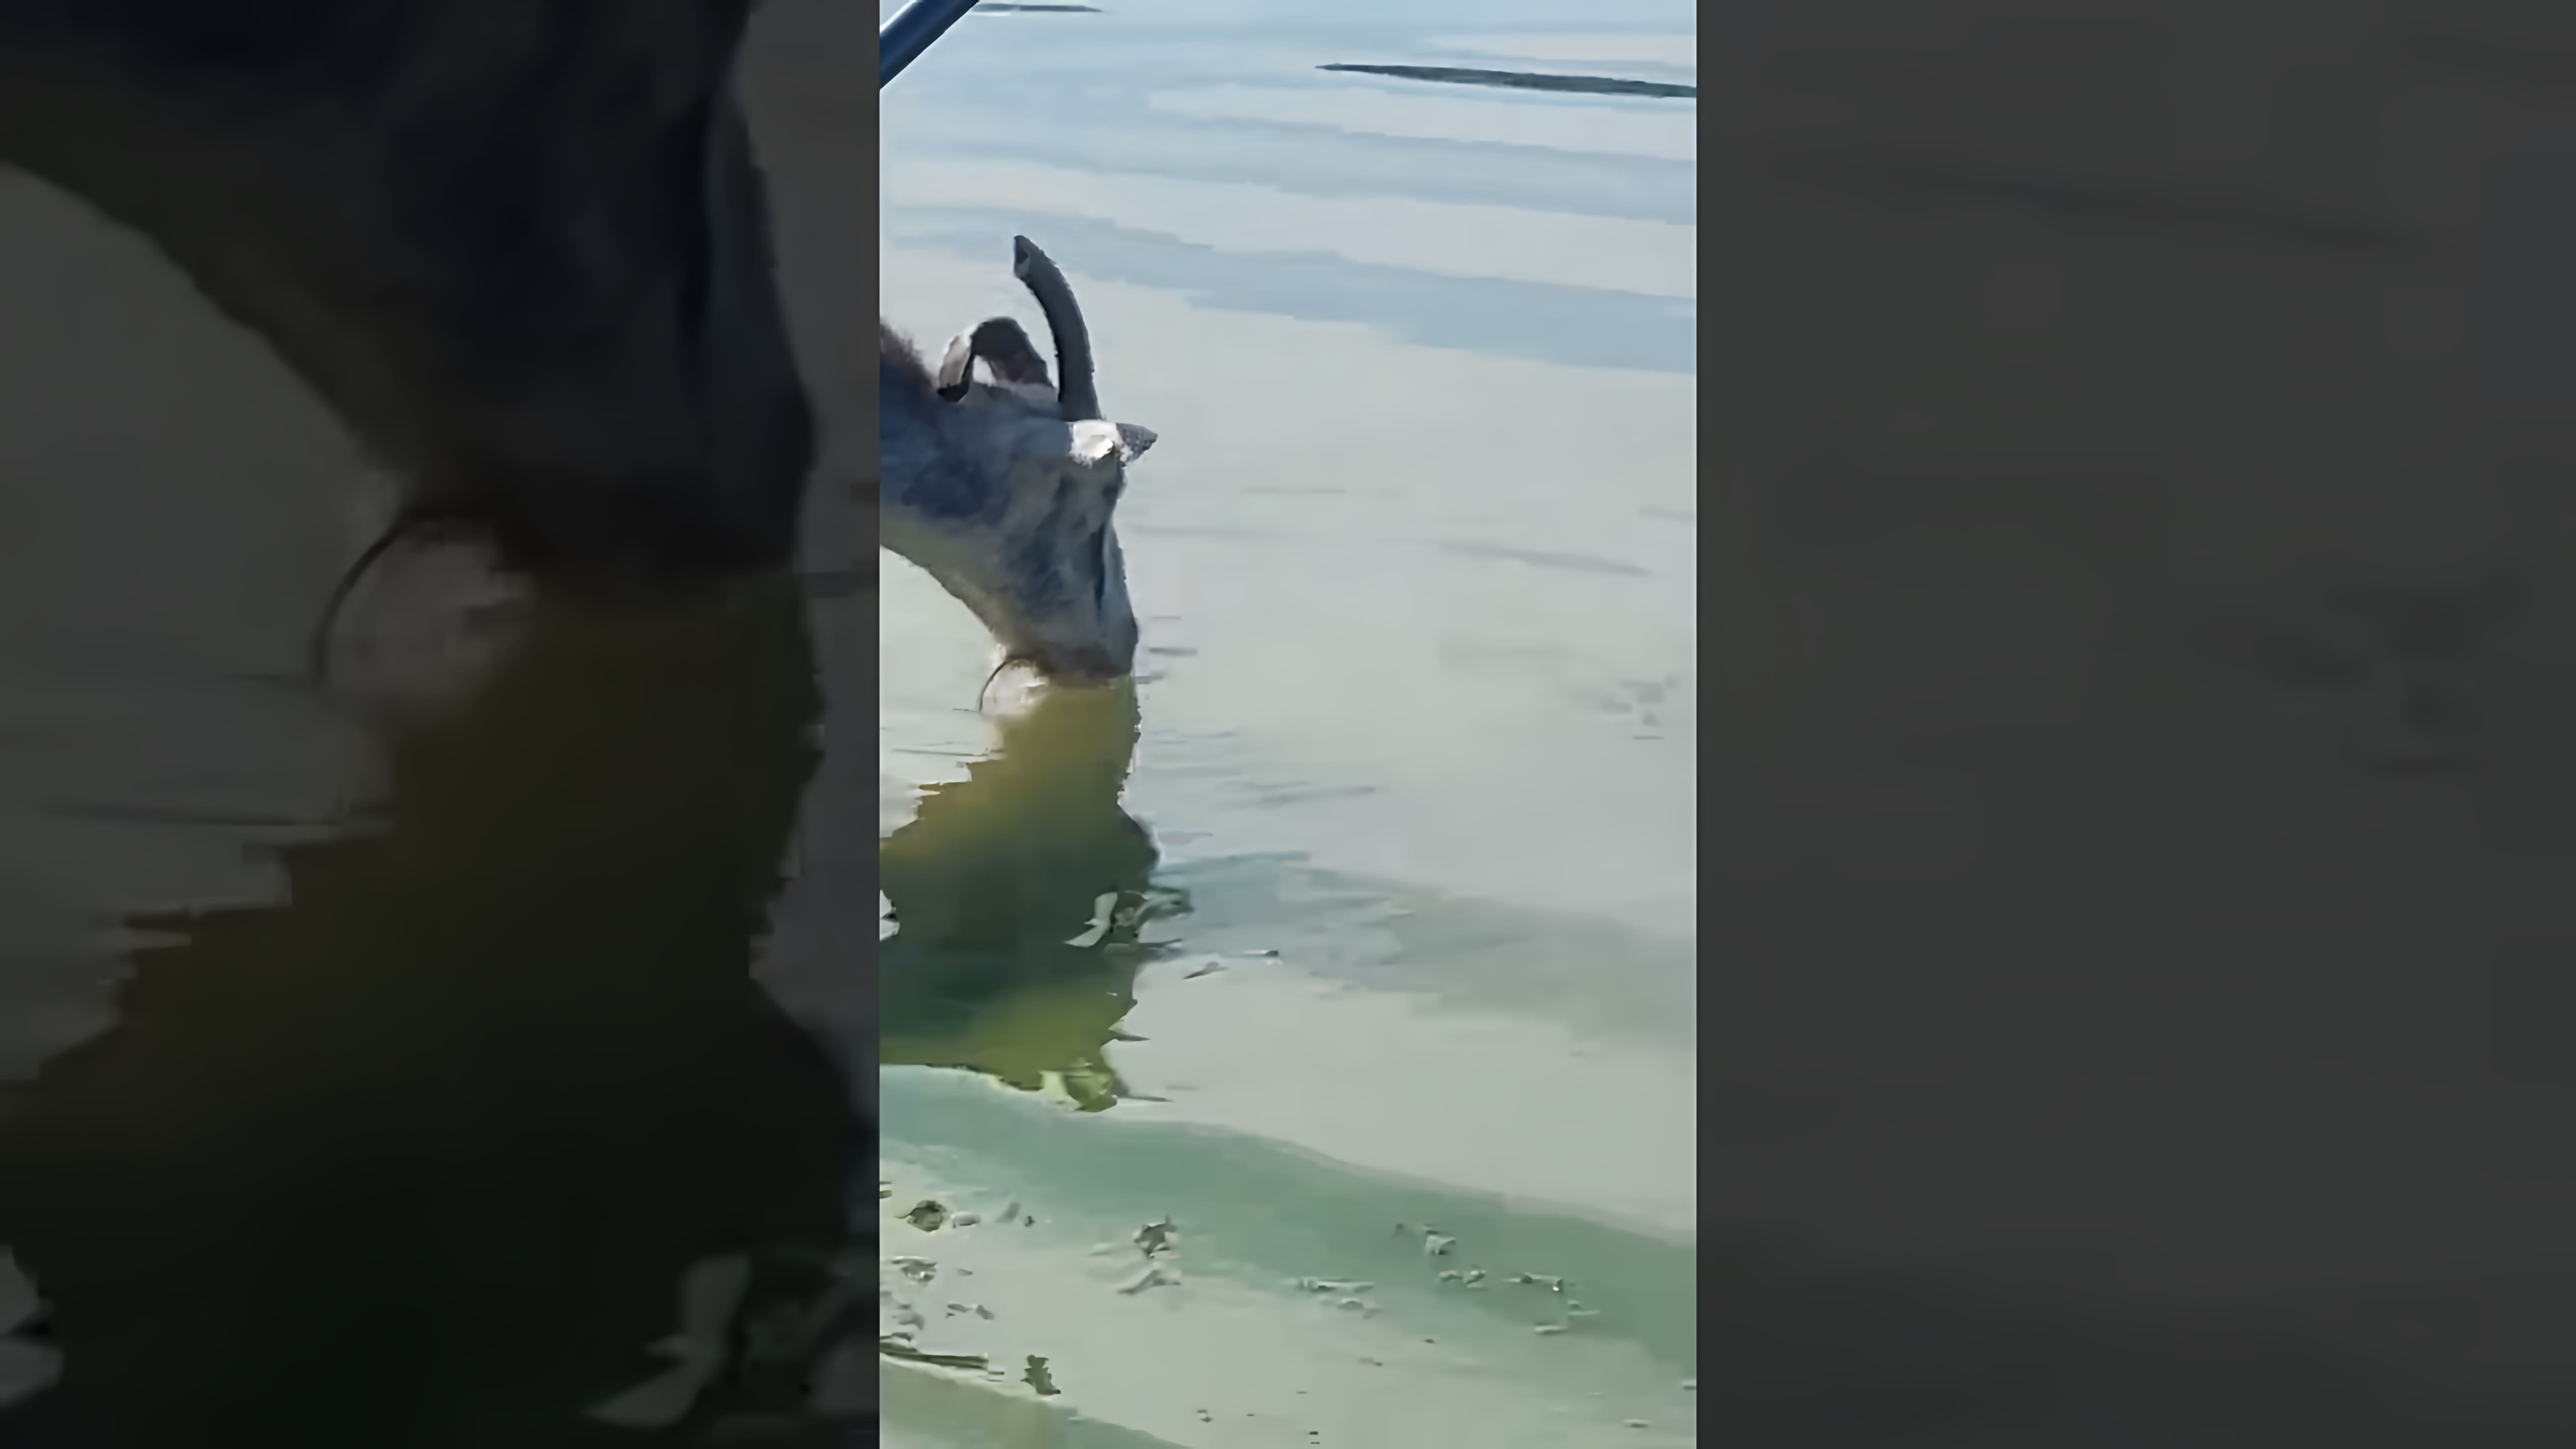 На видео-ролике рыбалка на реке происходит неожиданное событие: большой сом пытается утащить козу в воду, но увидев меня, отступает